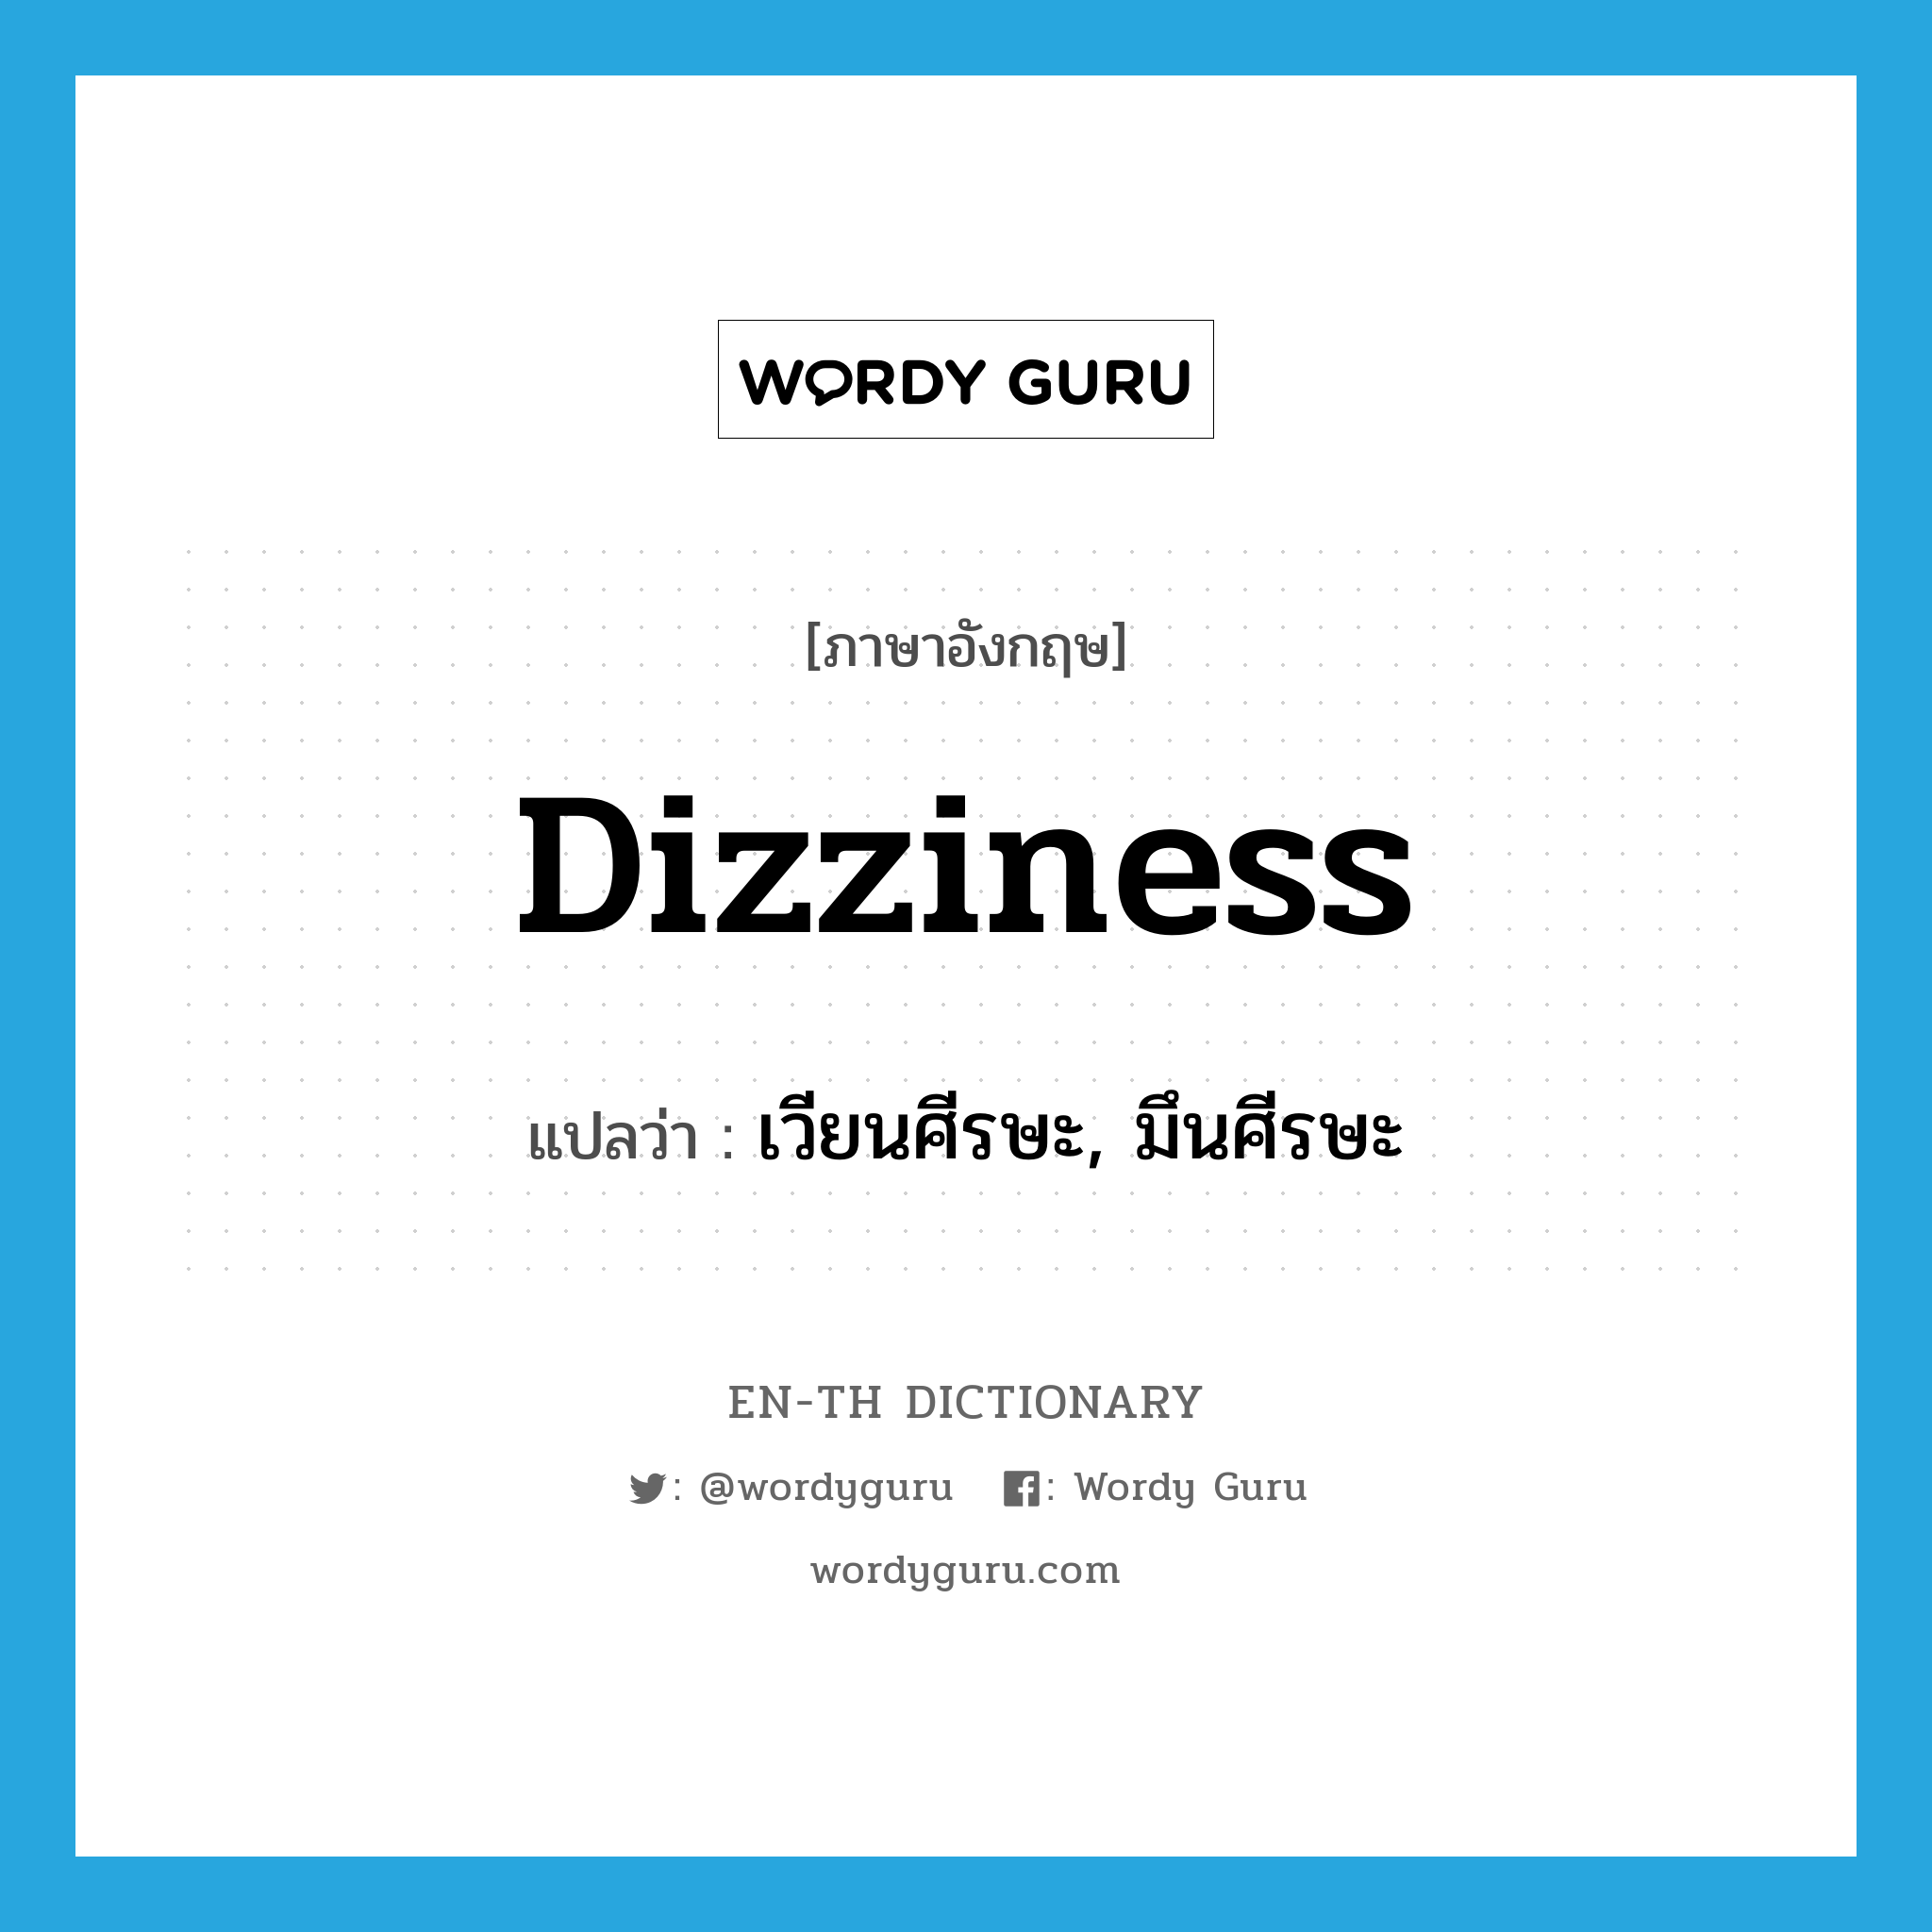 dizziness แปลว่า?, คำศัพท์ภาษาอังกฤษ dizziness แปลว่า เวียนศีรษะ, มึนศีรษะ ประเภท N หมวด N